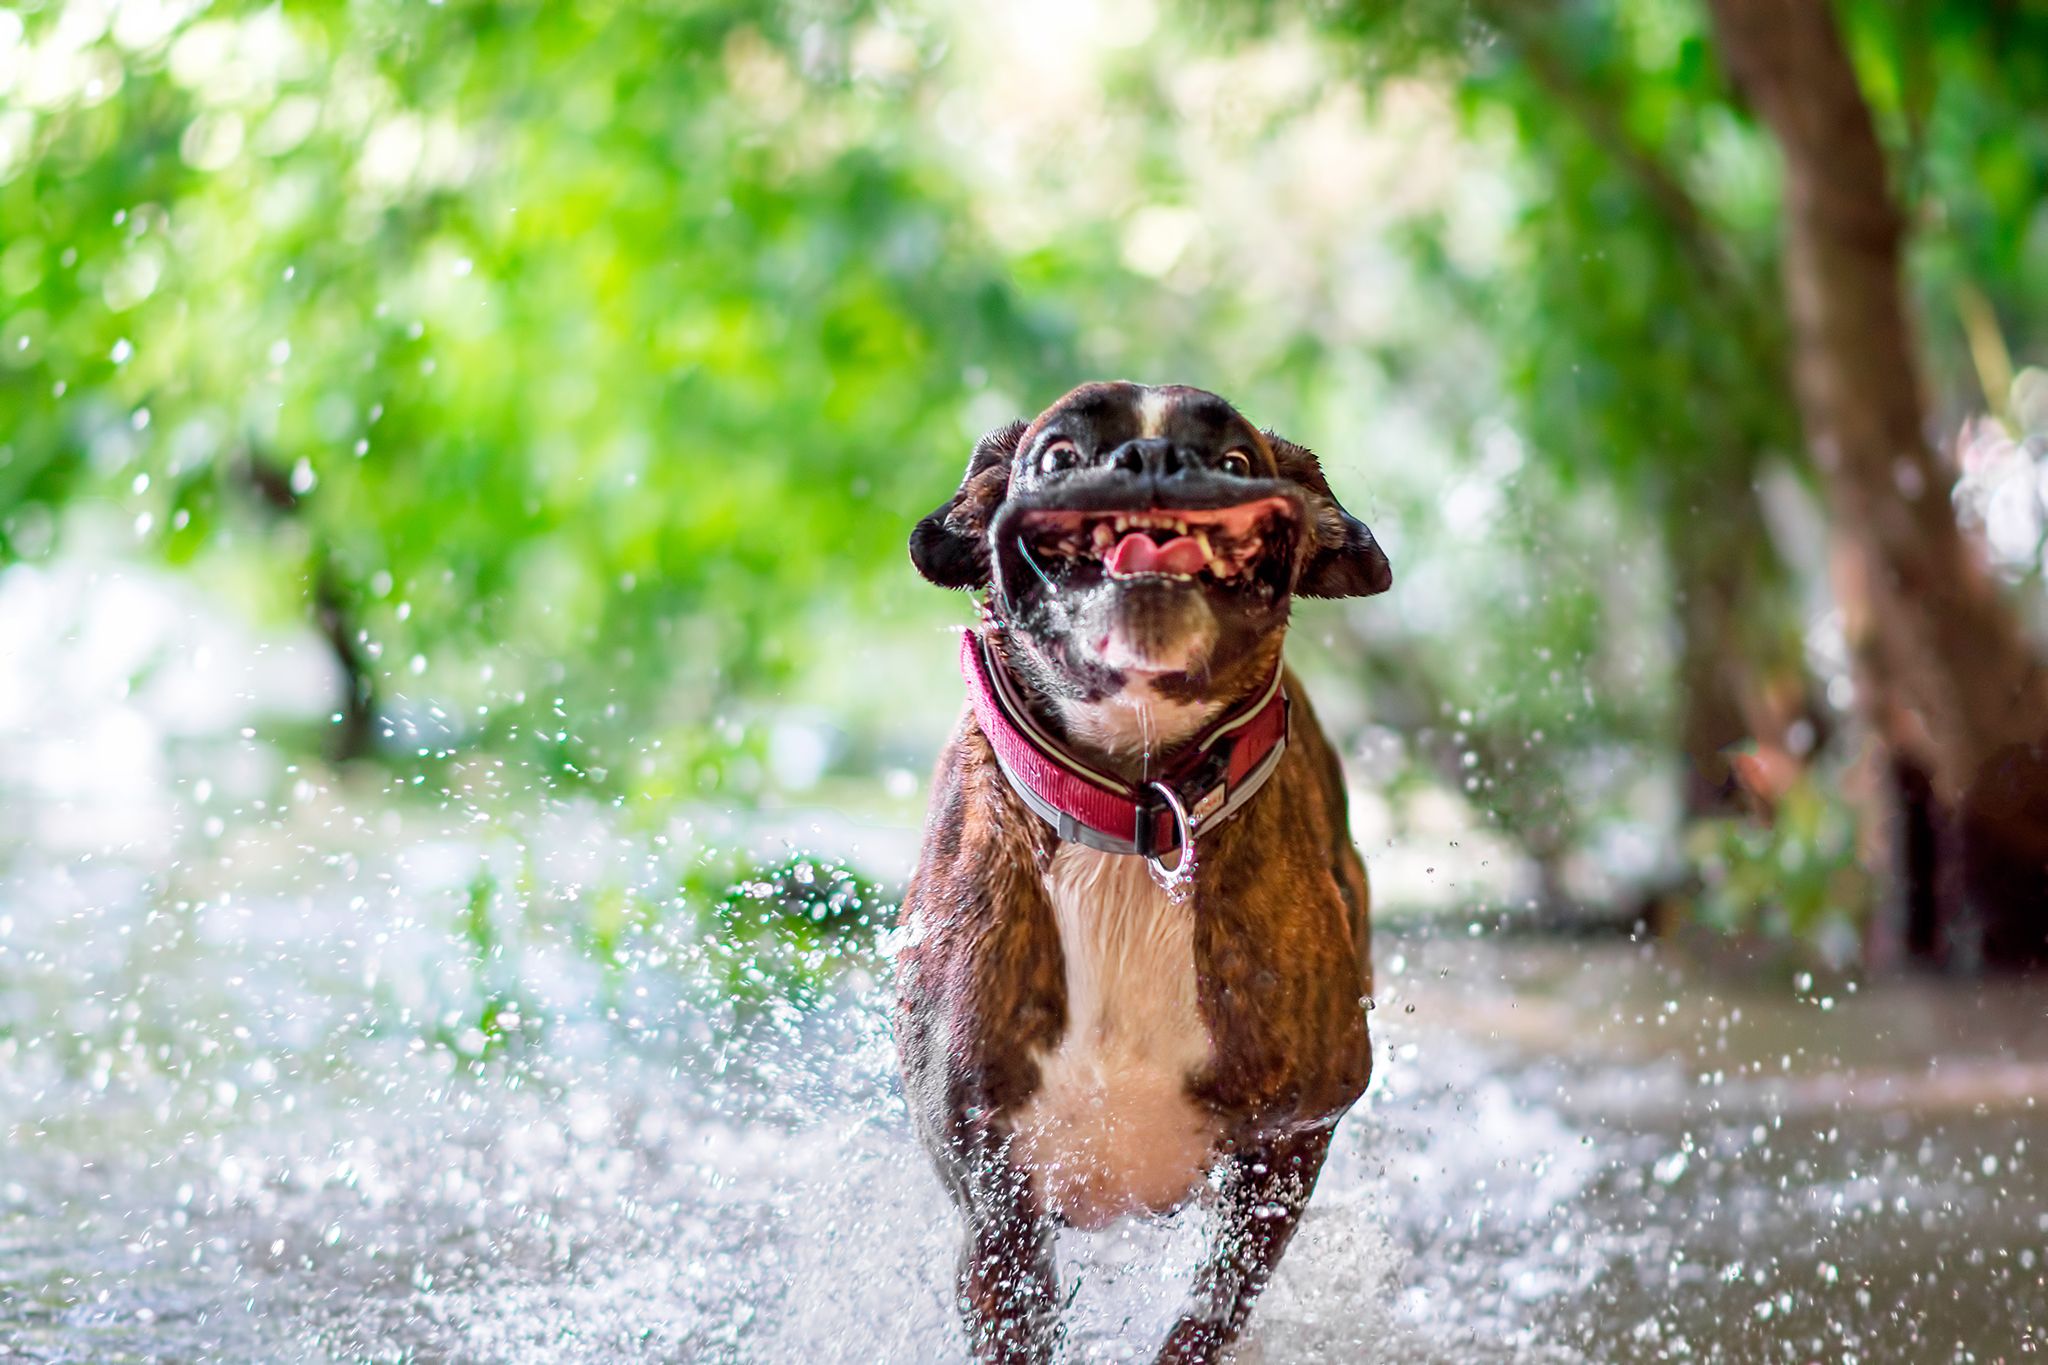 PsBattle: A dog running through water